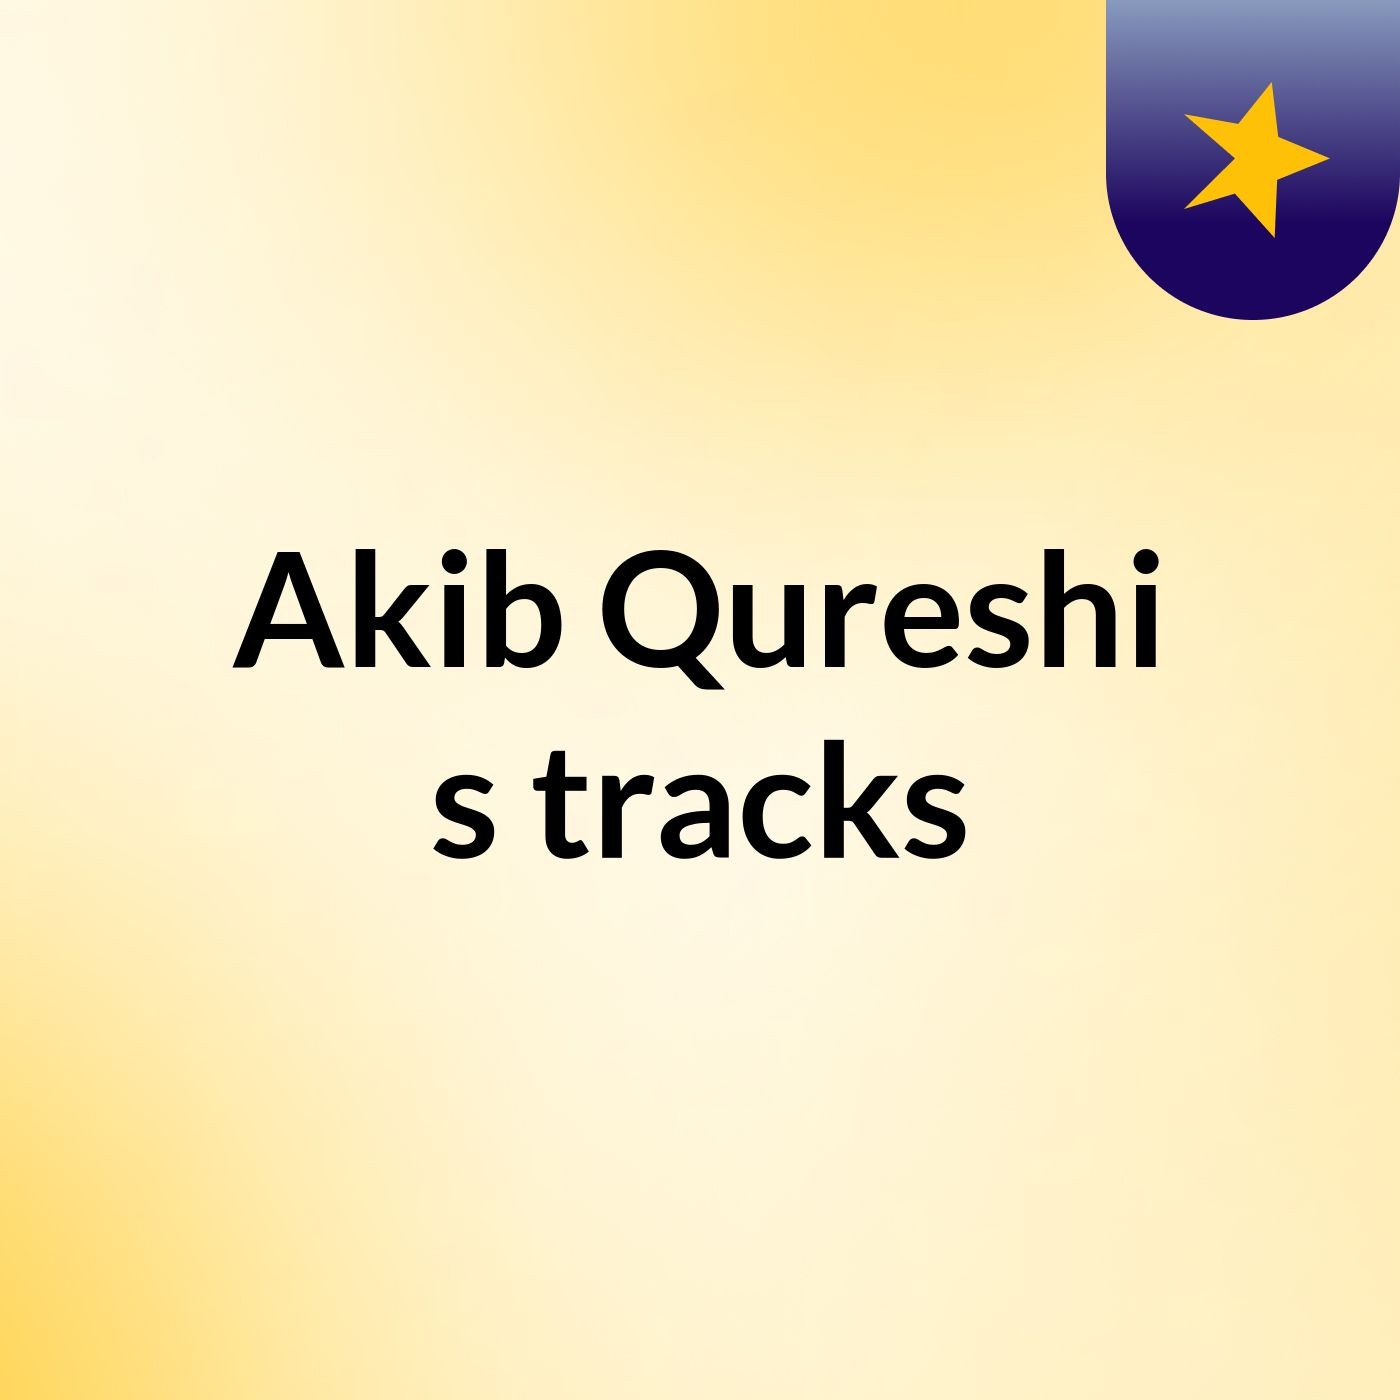 Akib Qureshi's tracks